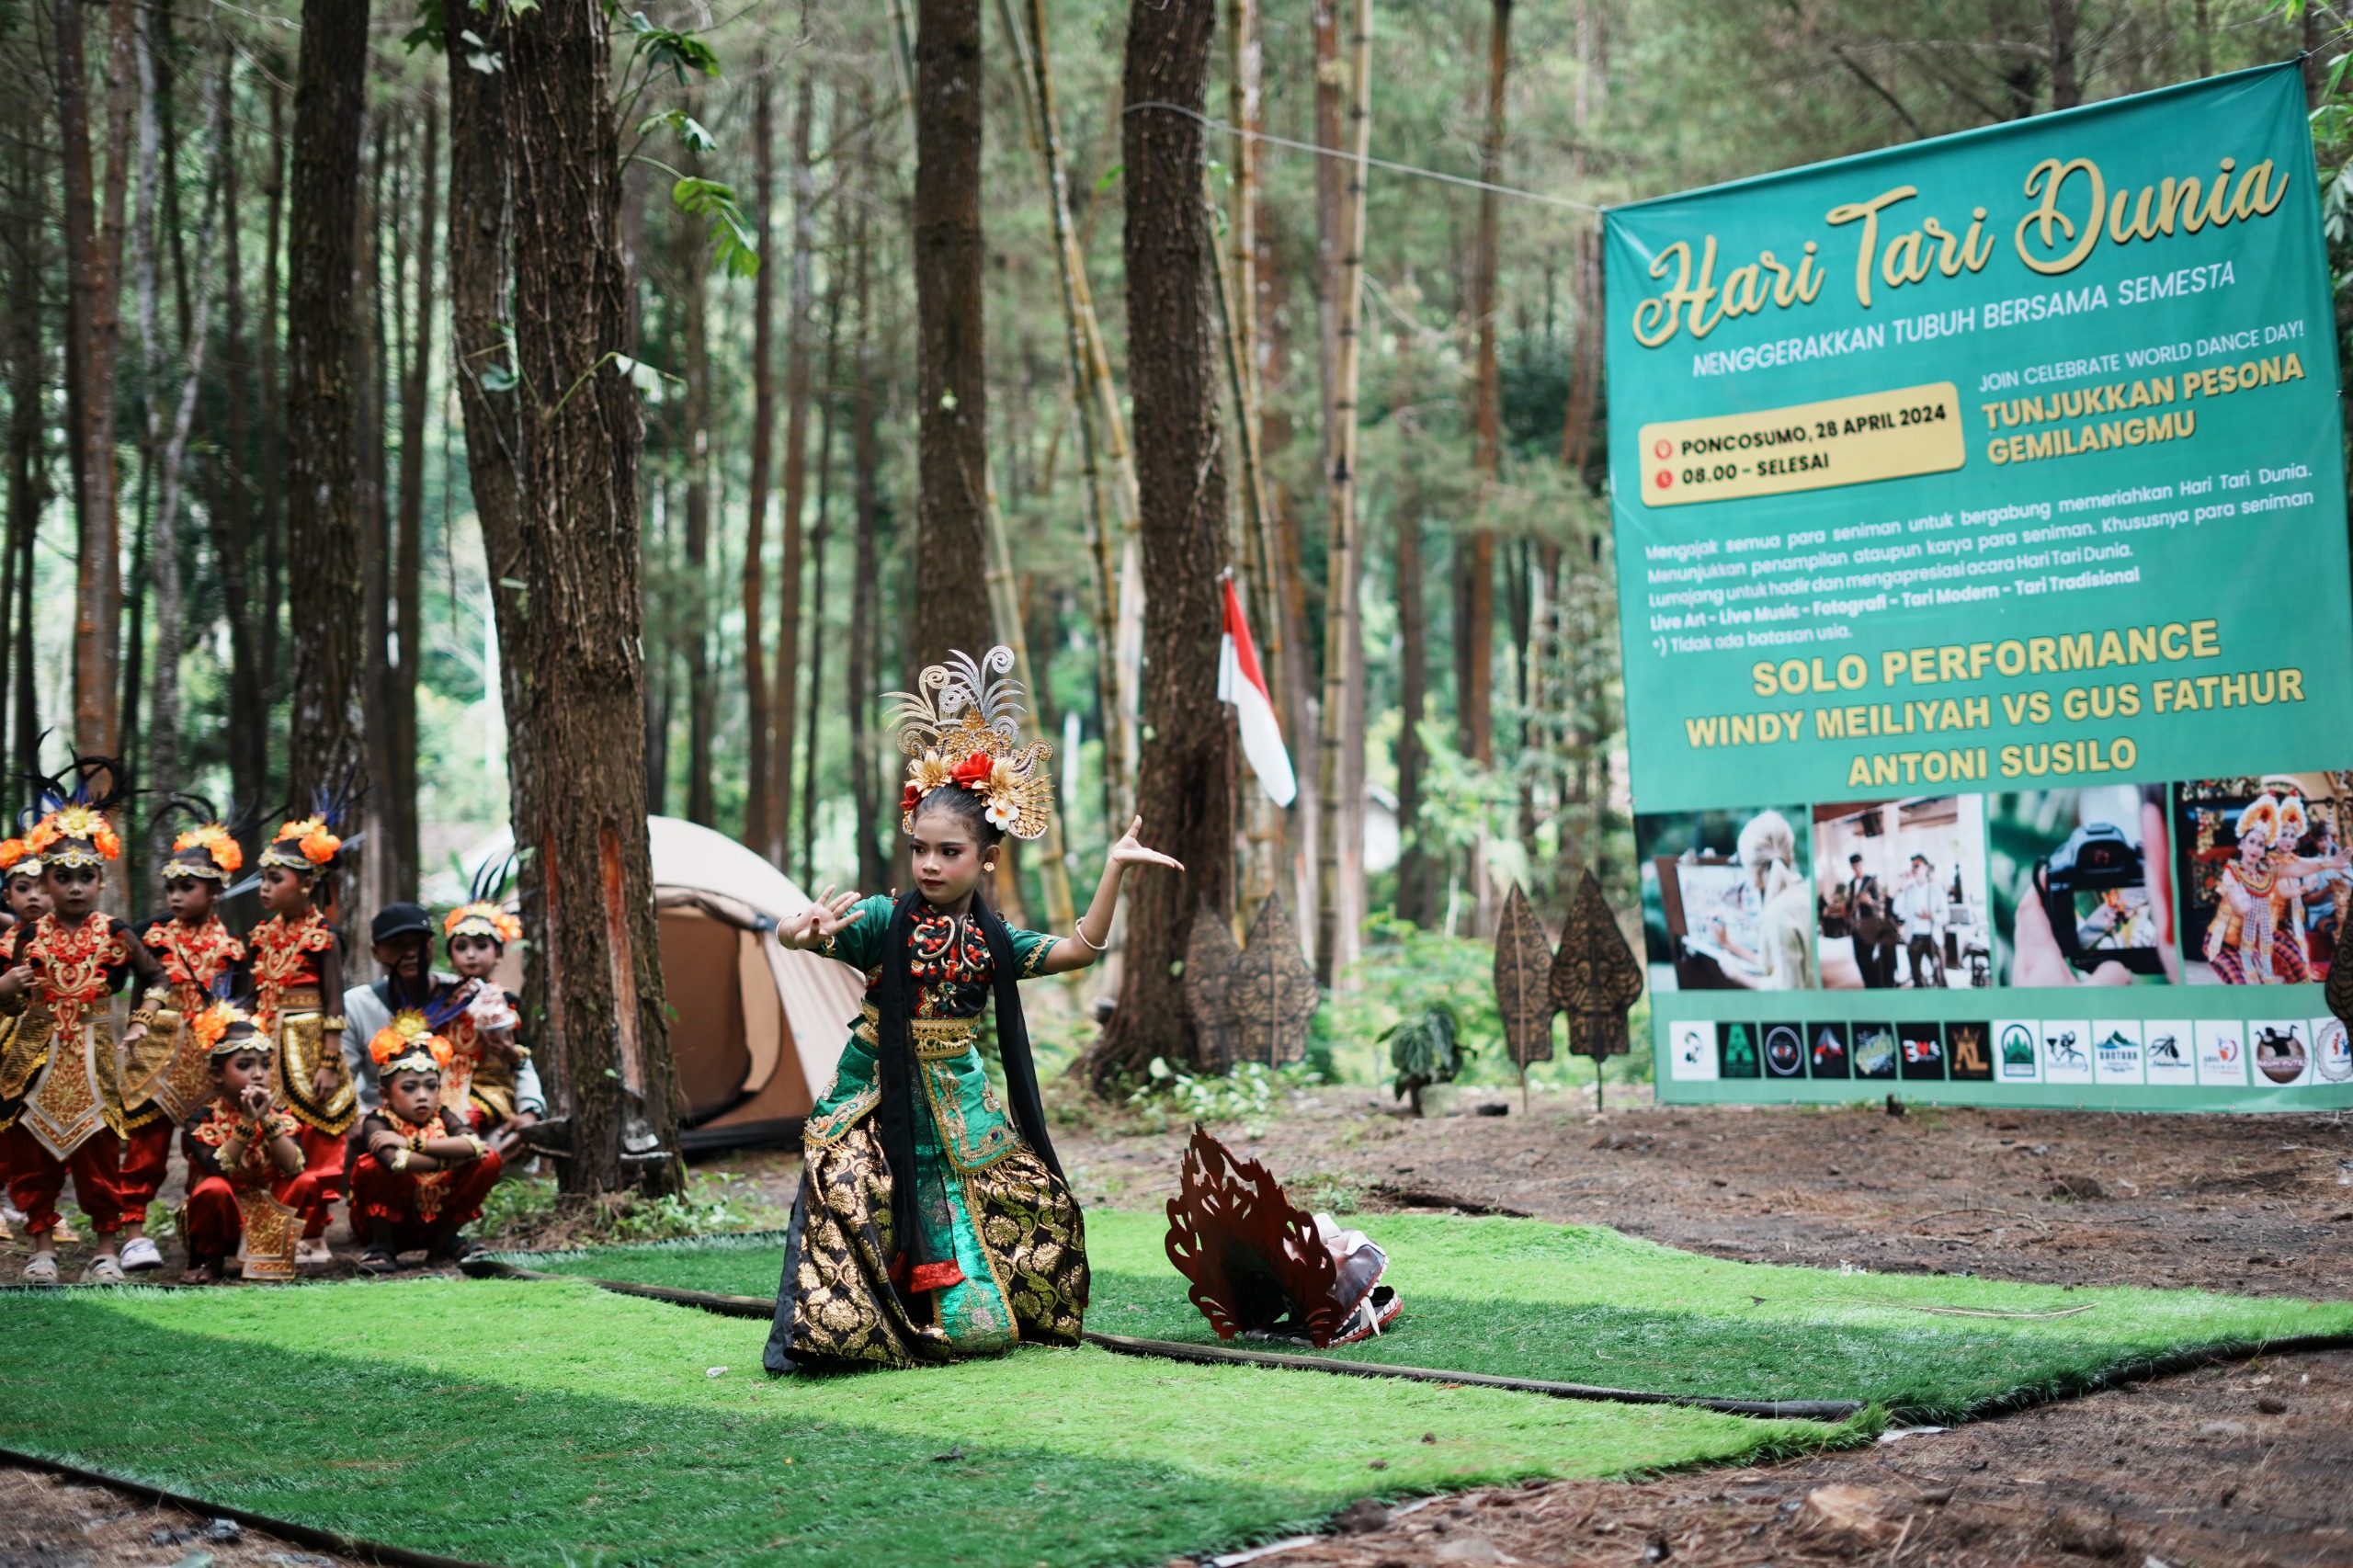 Peringati Hari Tari Sedunia, Seni Tari Lumajang Meriahkan Acara di Wisata Hutan Pinus Poncosumo